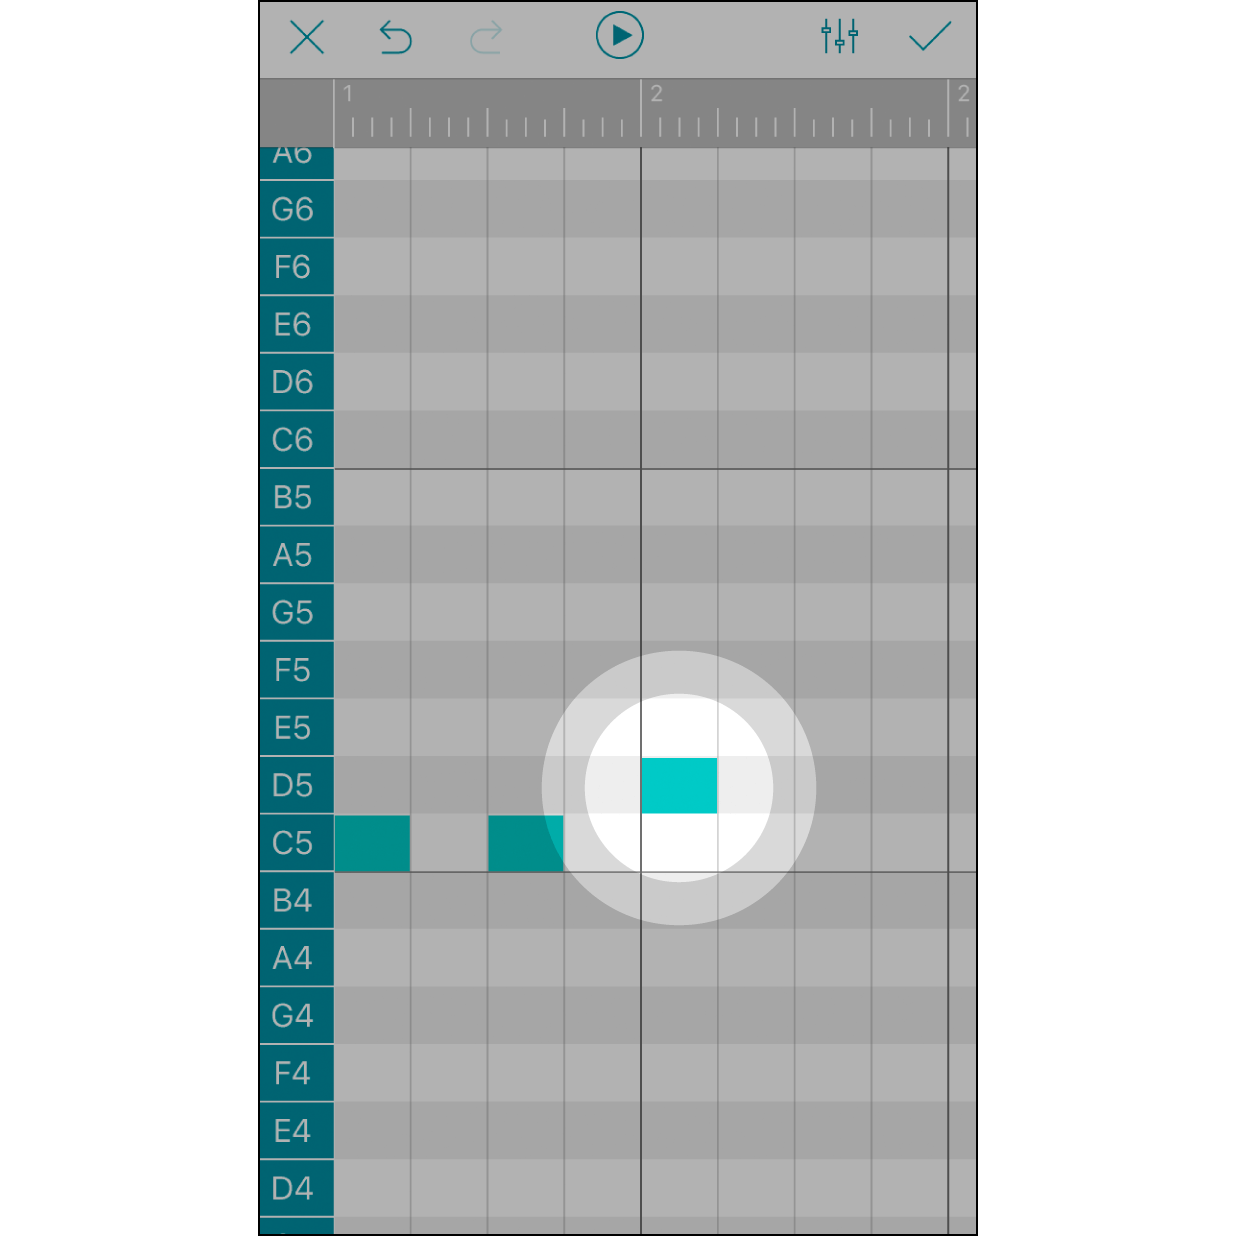 タッチして音符を追加いずれかのボックスをタッチすれば音符を追加できます。削除したい場合は、再びタッチしてください。各ボックスは1/16音符を、灰色バーは拍子を表します。